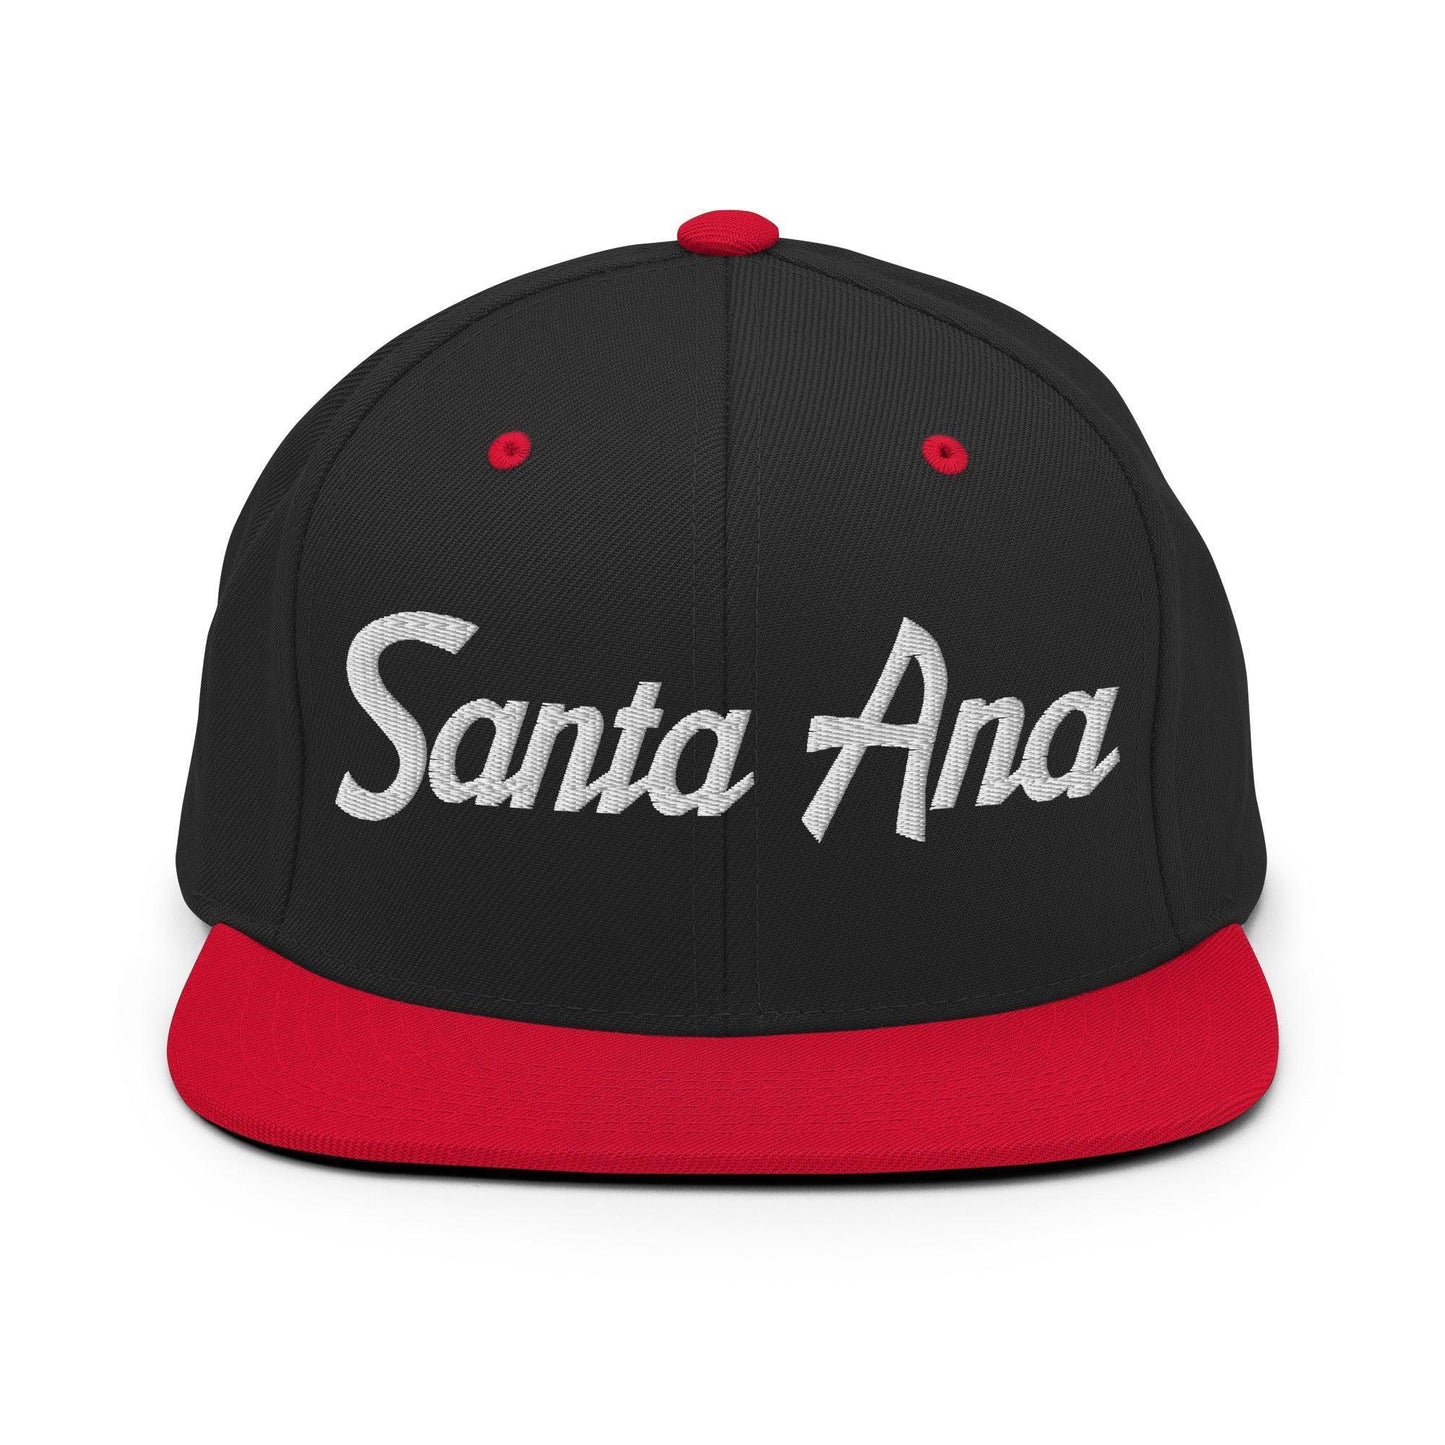 Santa Ana Script Snapback Hat Black Red